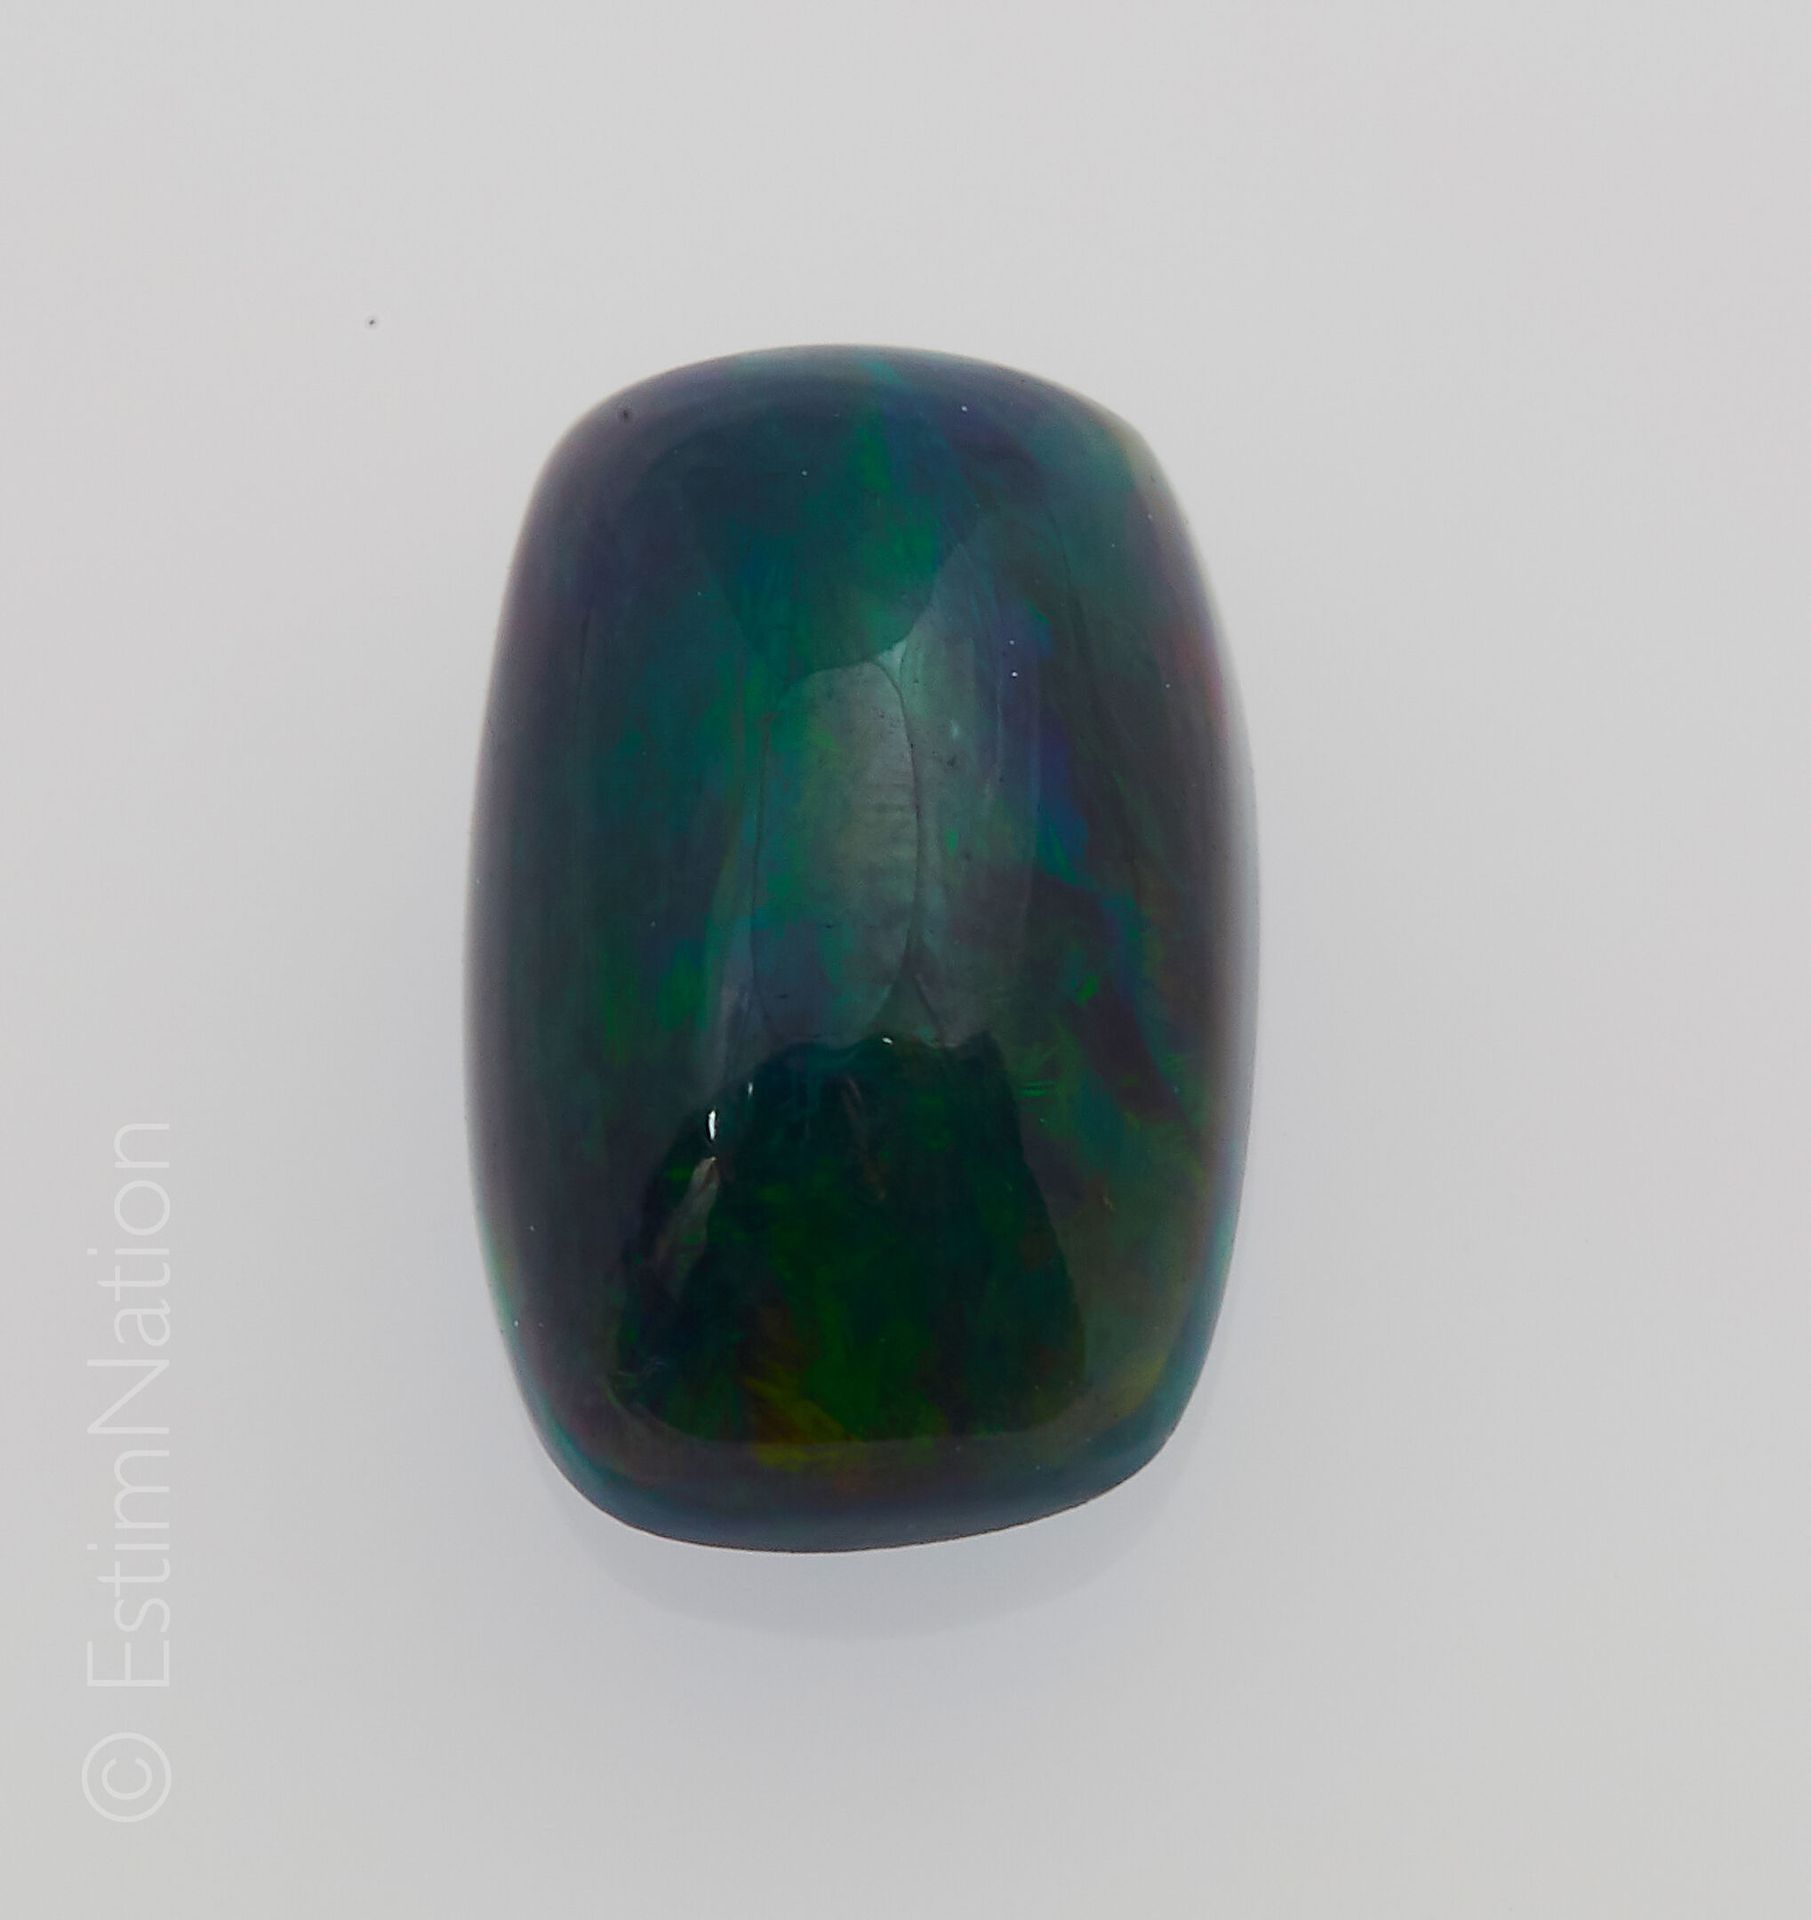 OPALE NOIRE 1.67 CARAT Opale nero cabochon del peso di circa 1,67 ct

Dimensioni&hellip;